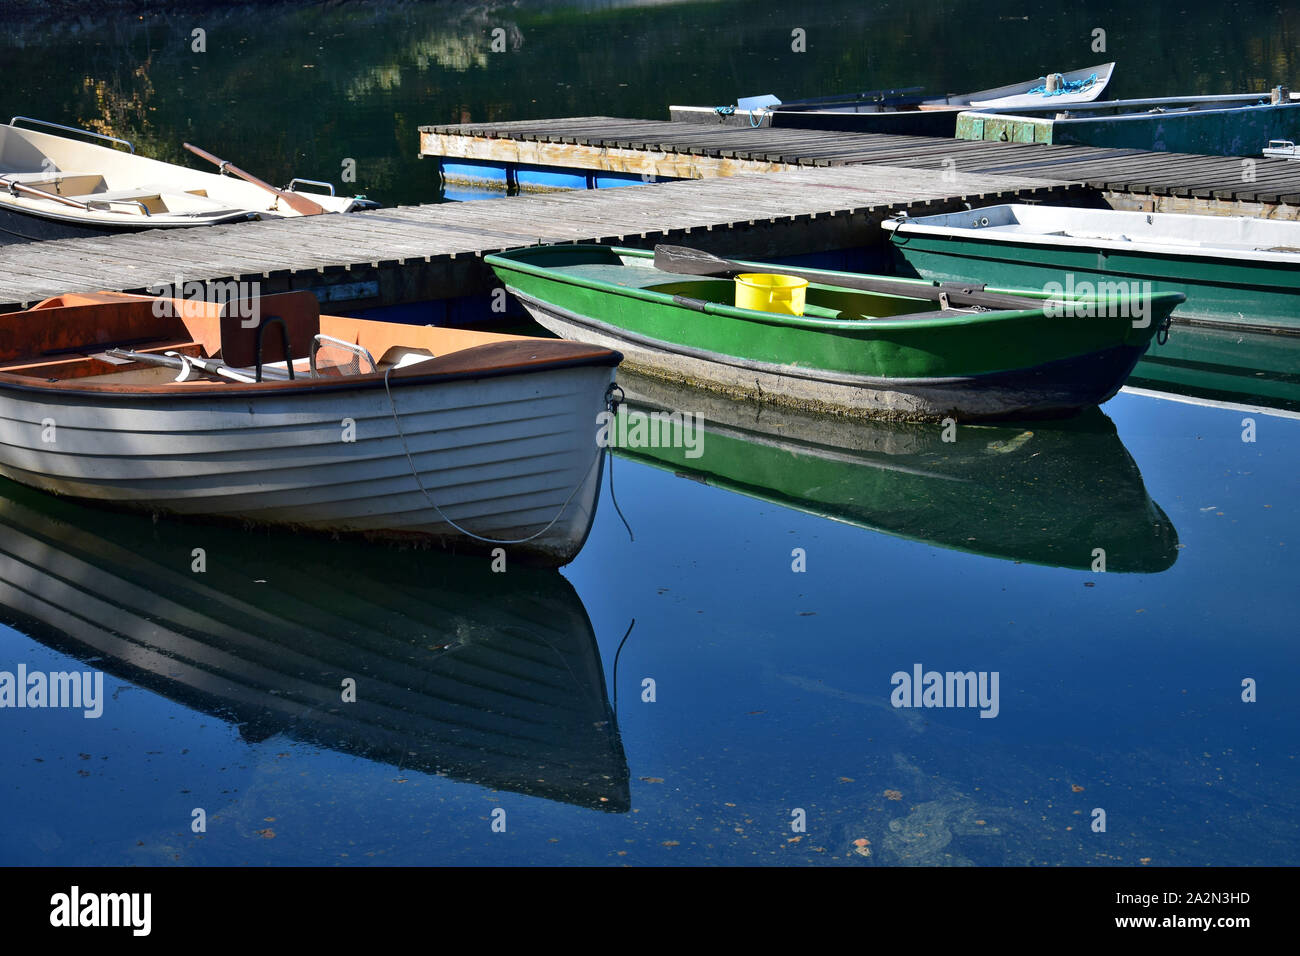 Einige angler Boote verschiedener Farben in einem See, im Wasser widerspiegelt. Stockfoto